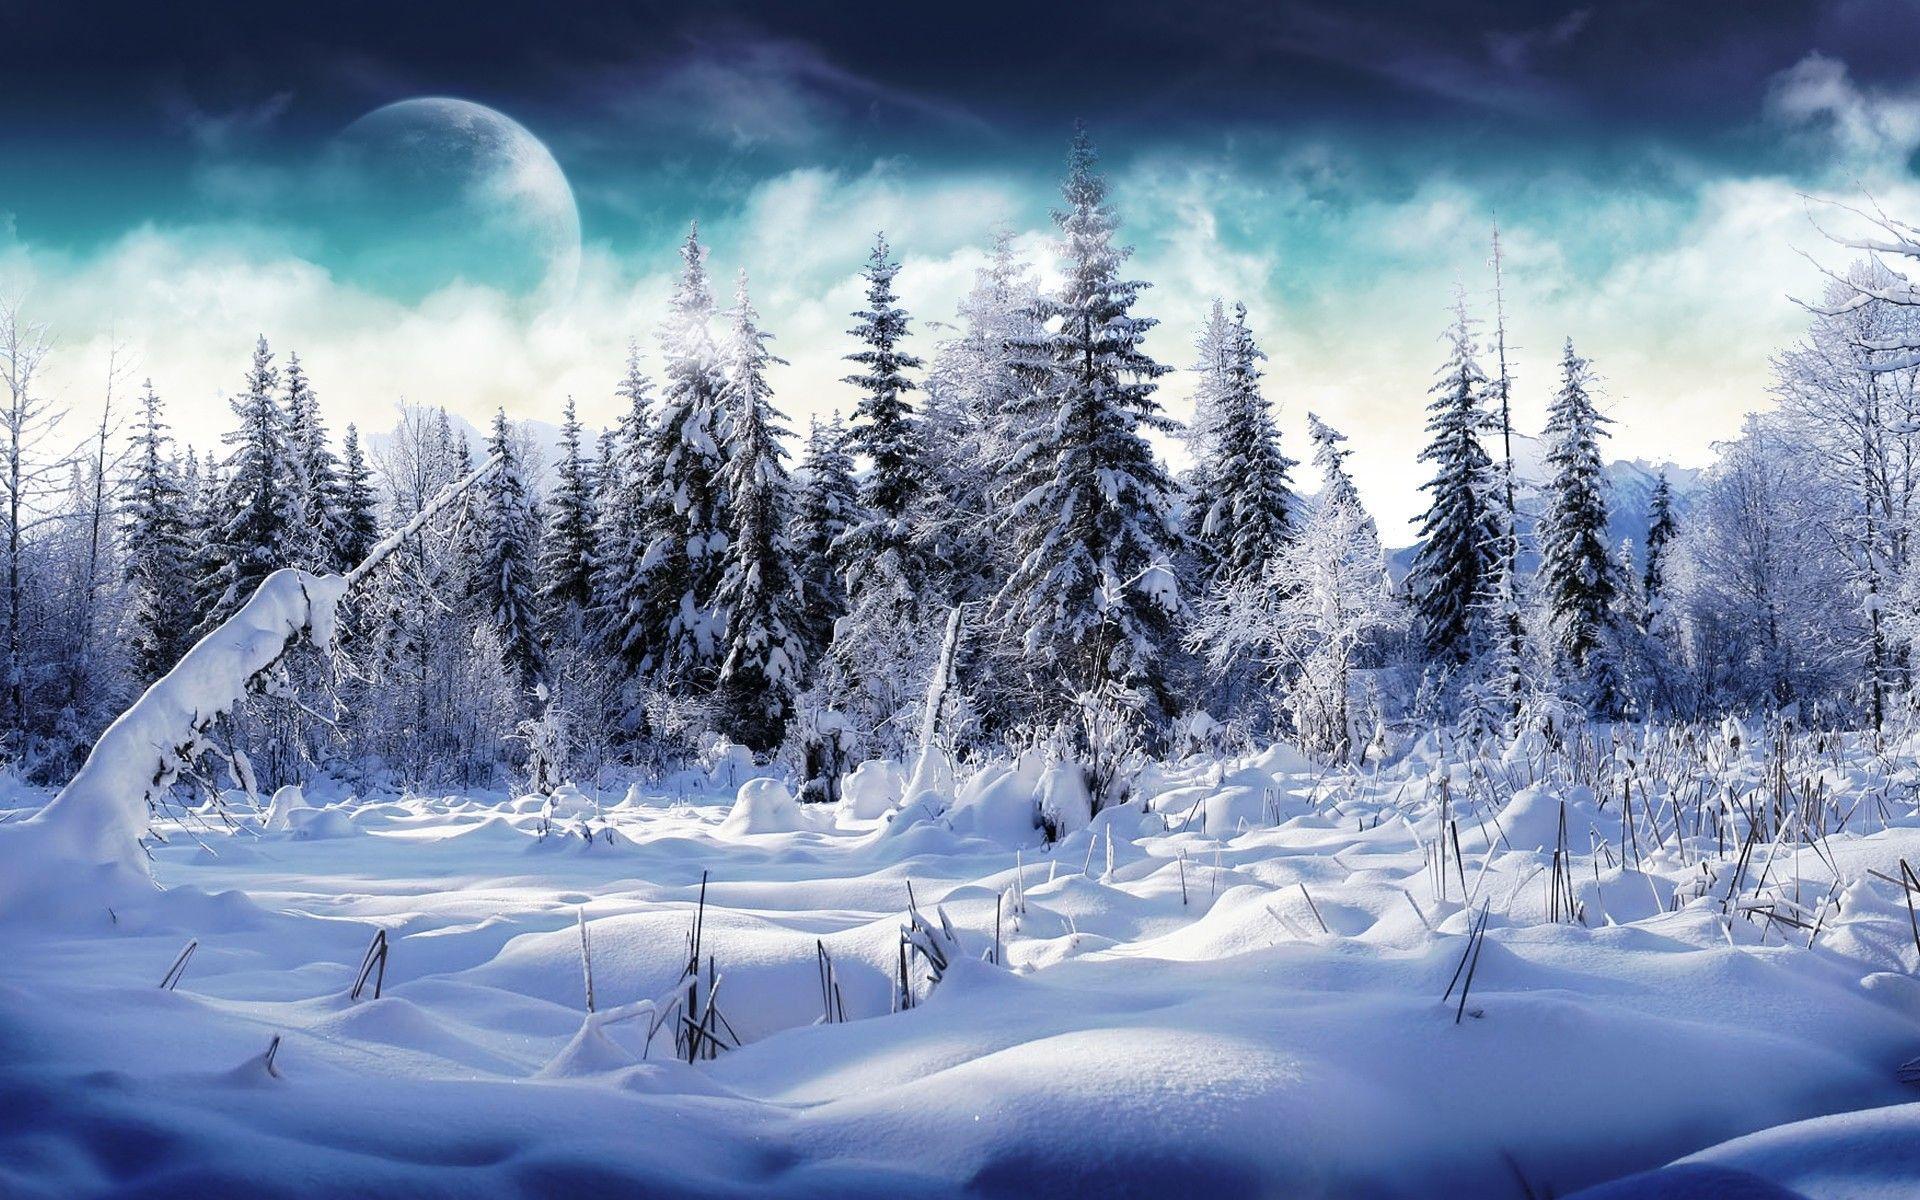 Wallpaper For > Pretty Winter Background For Desktops